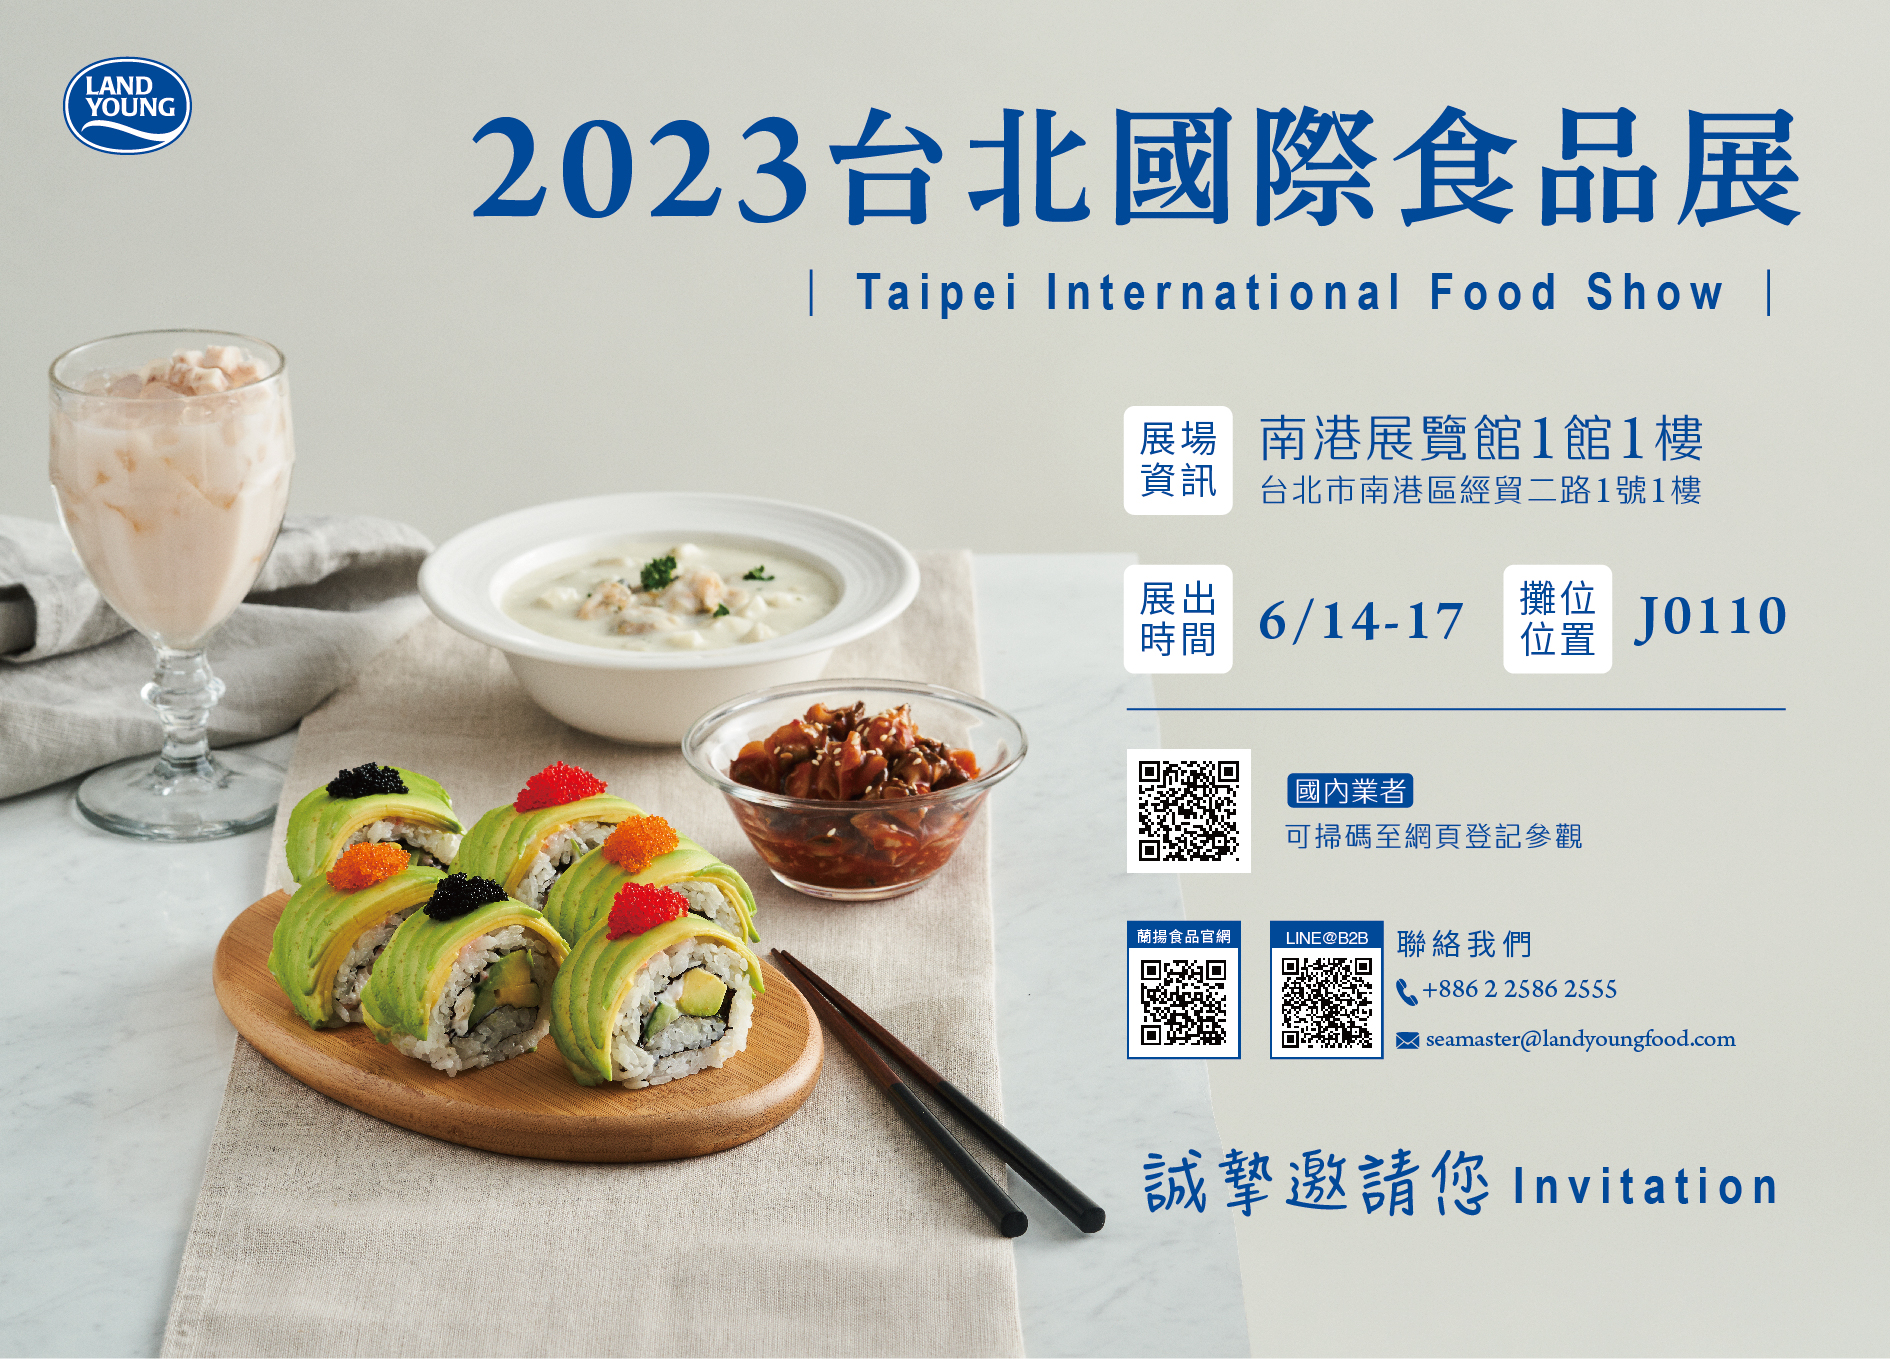 2023-Taipei Food Show-uitnodigingskaart-Chinese versie-V3-01